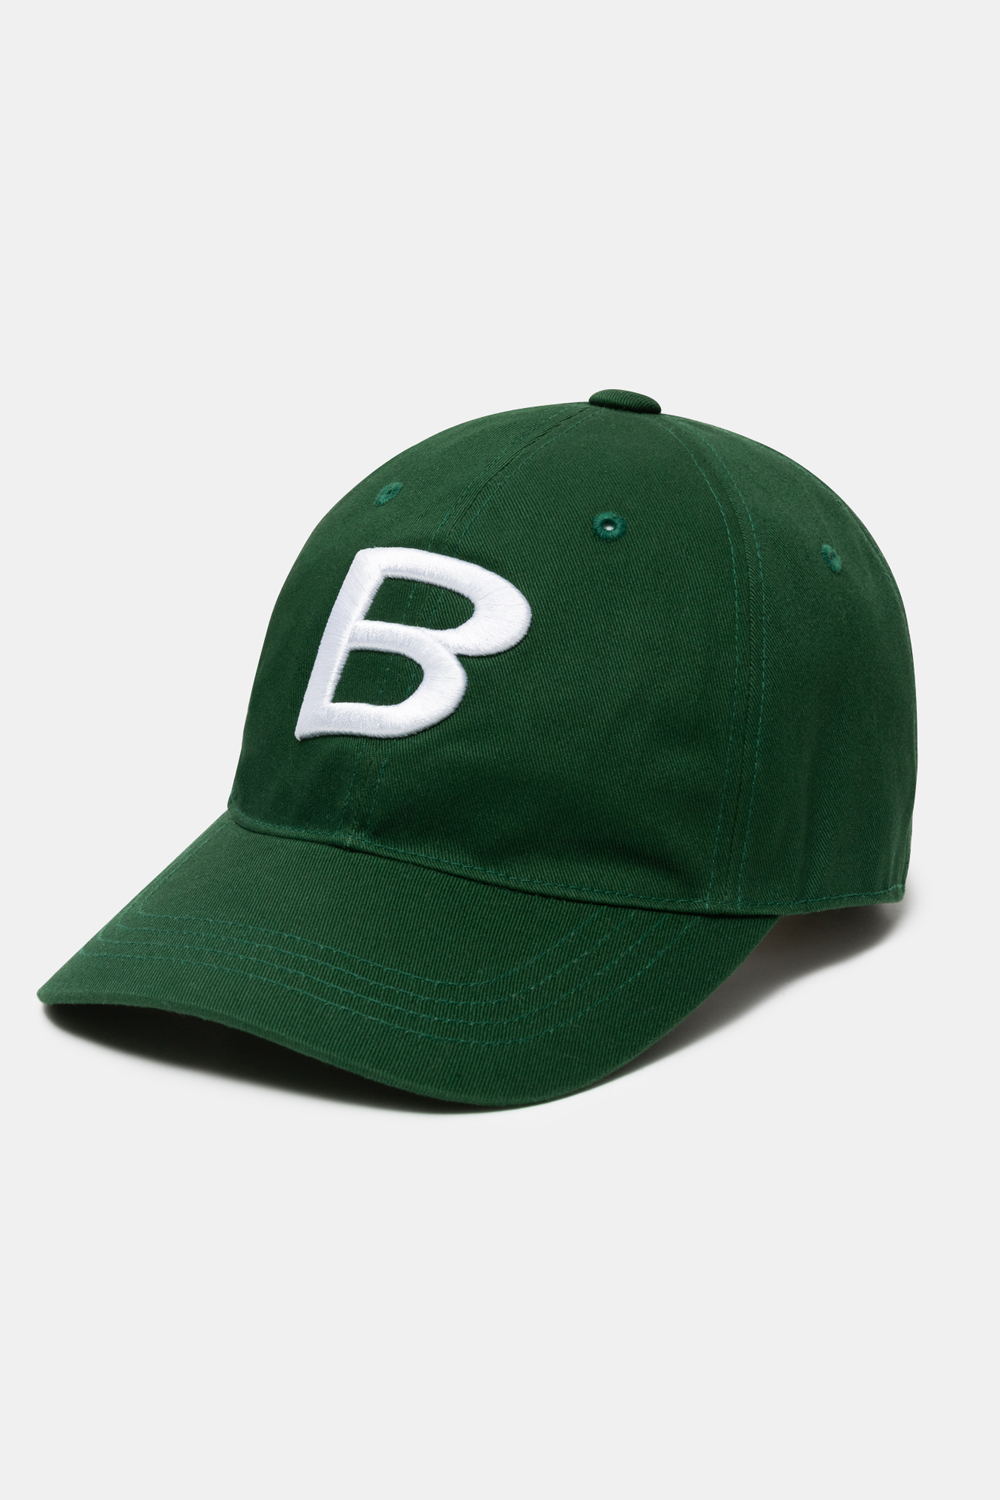 B LOGO BALL CAP/BGNBRIGHT GREEN